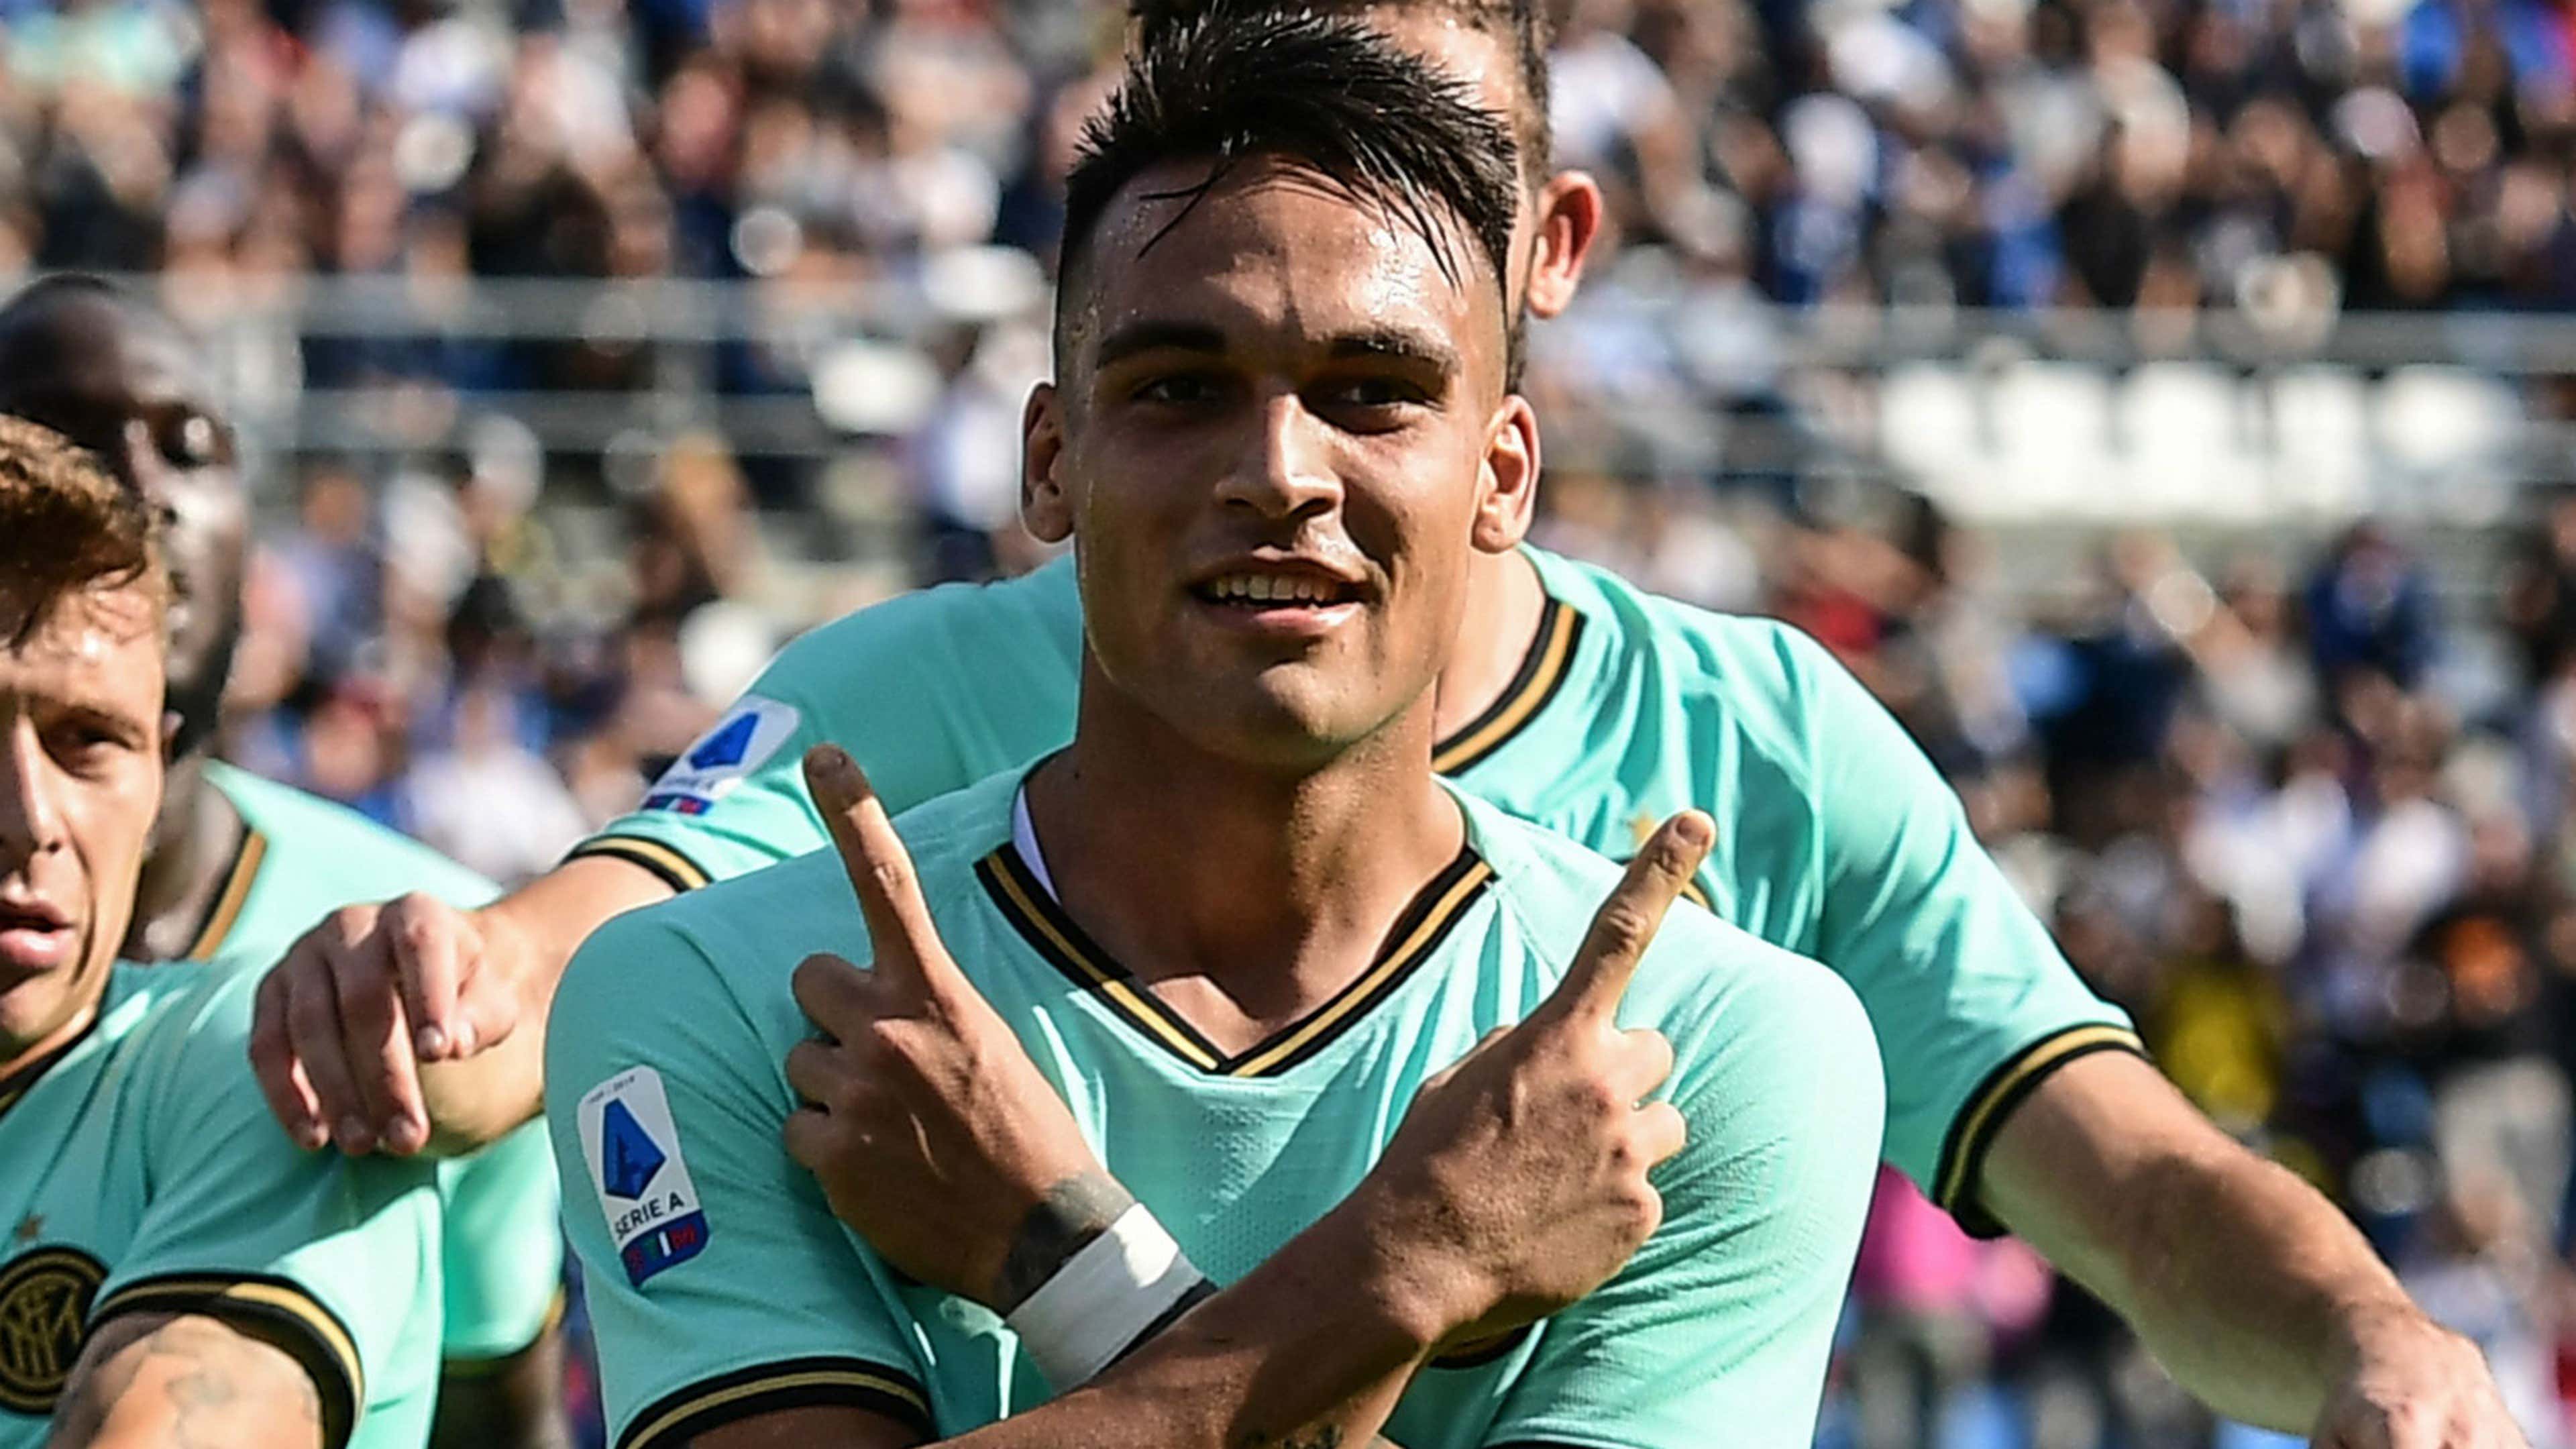 Lautaro Martinez Inter 2019-20